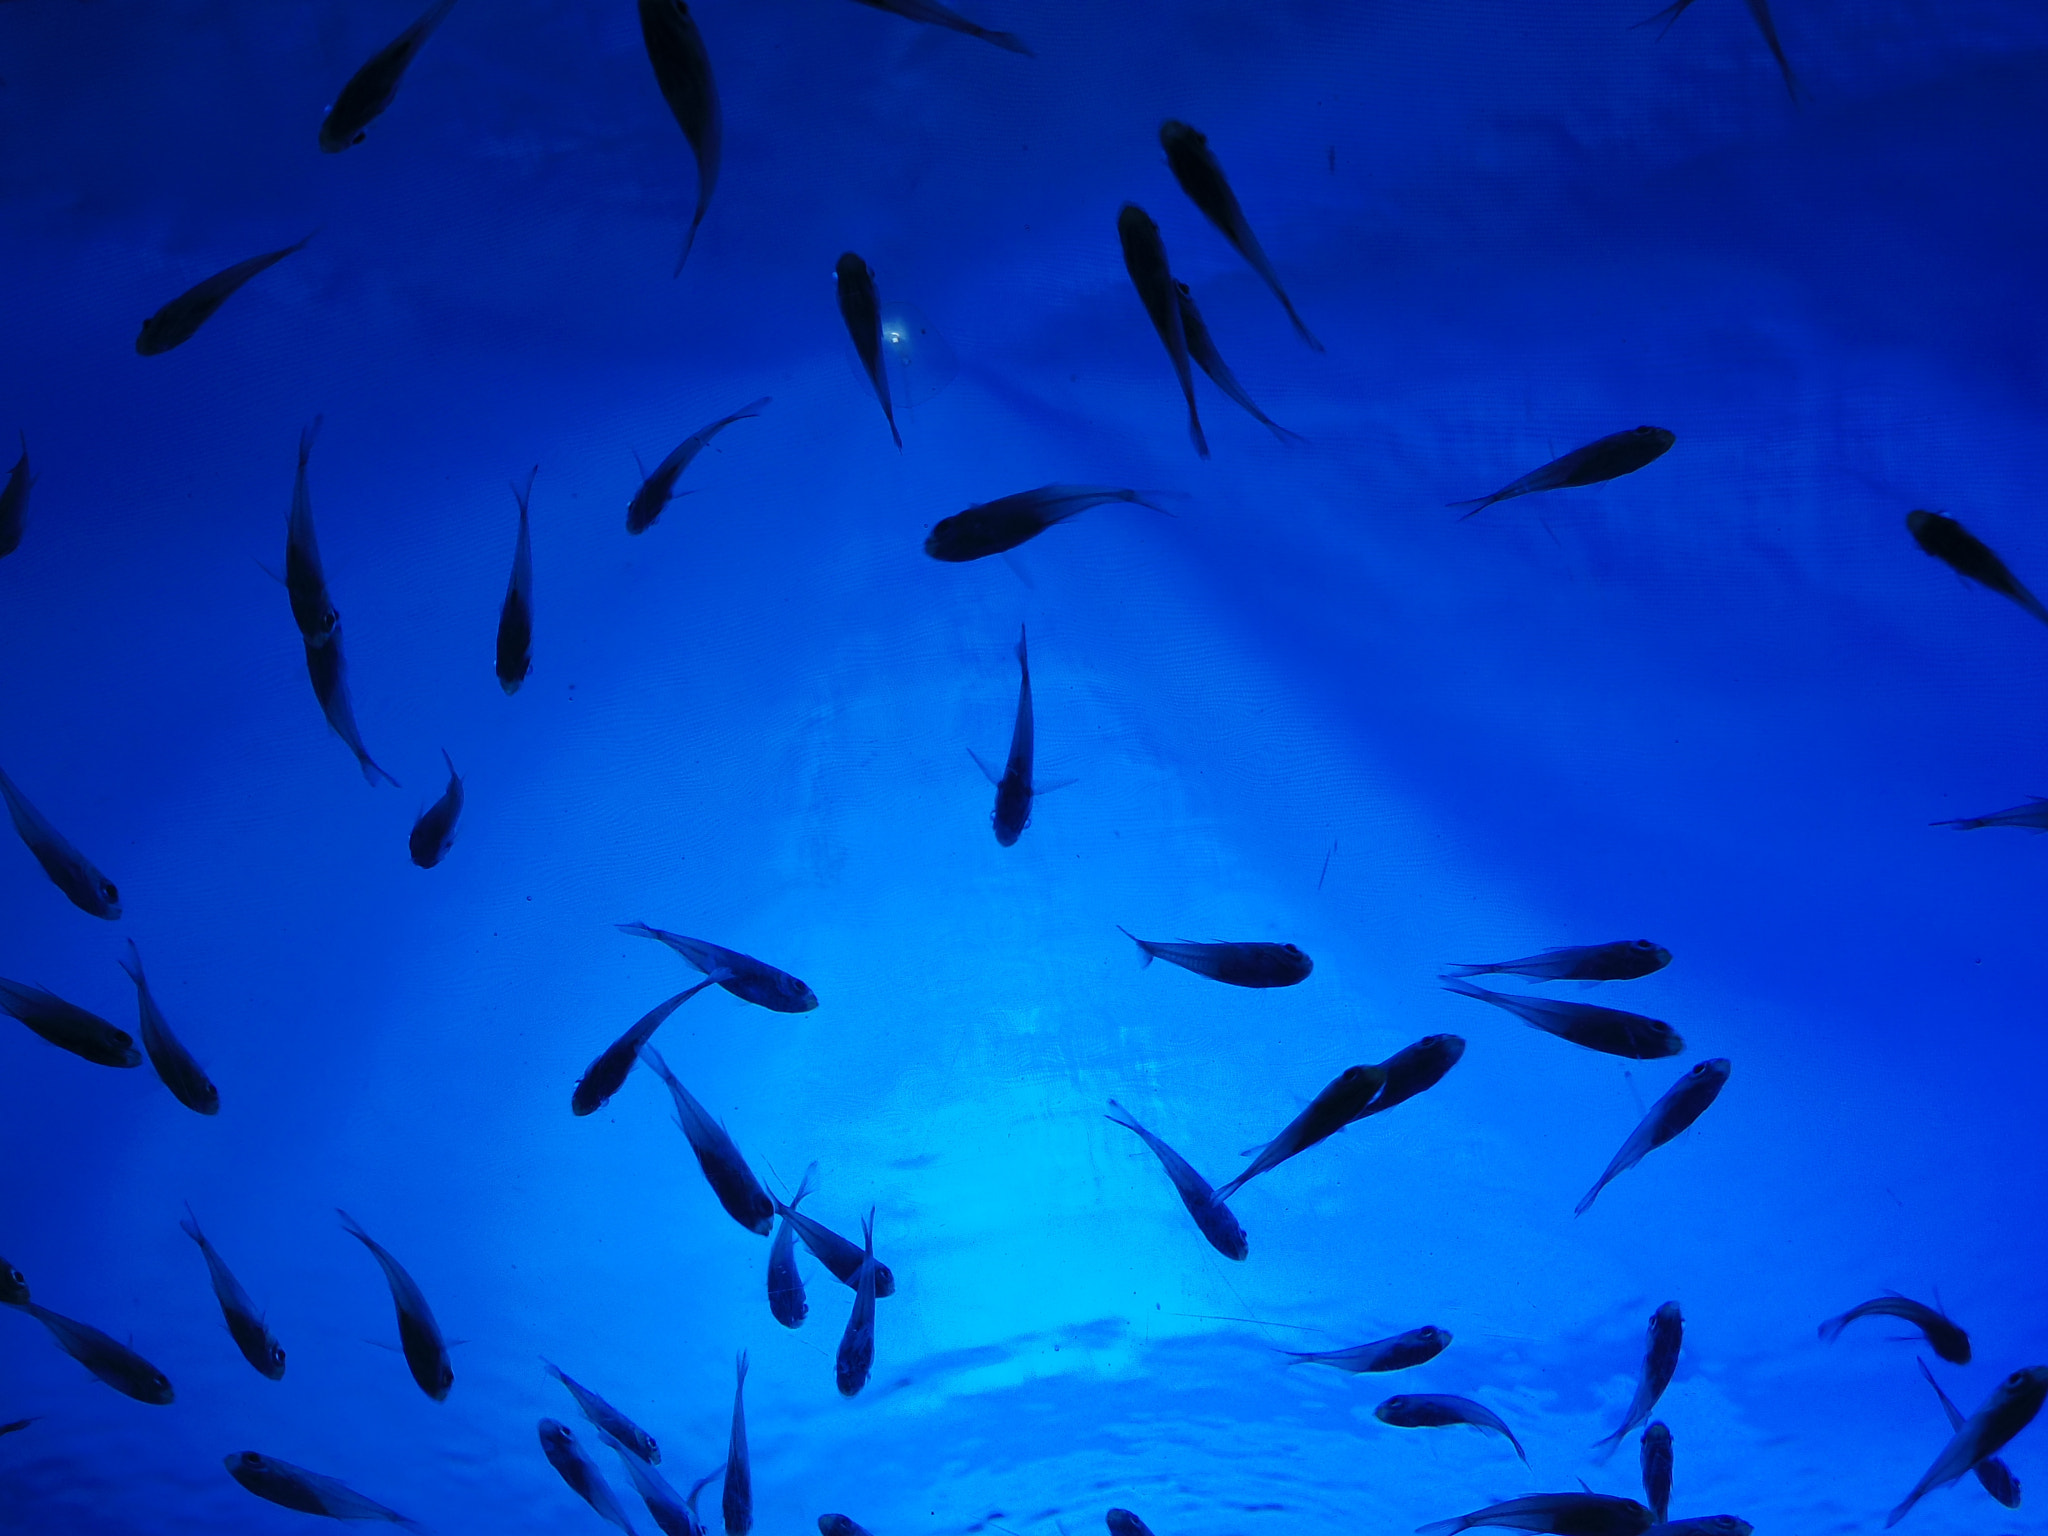 Pentax Q7 sample photo. Aquarium fish photography